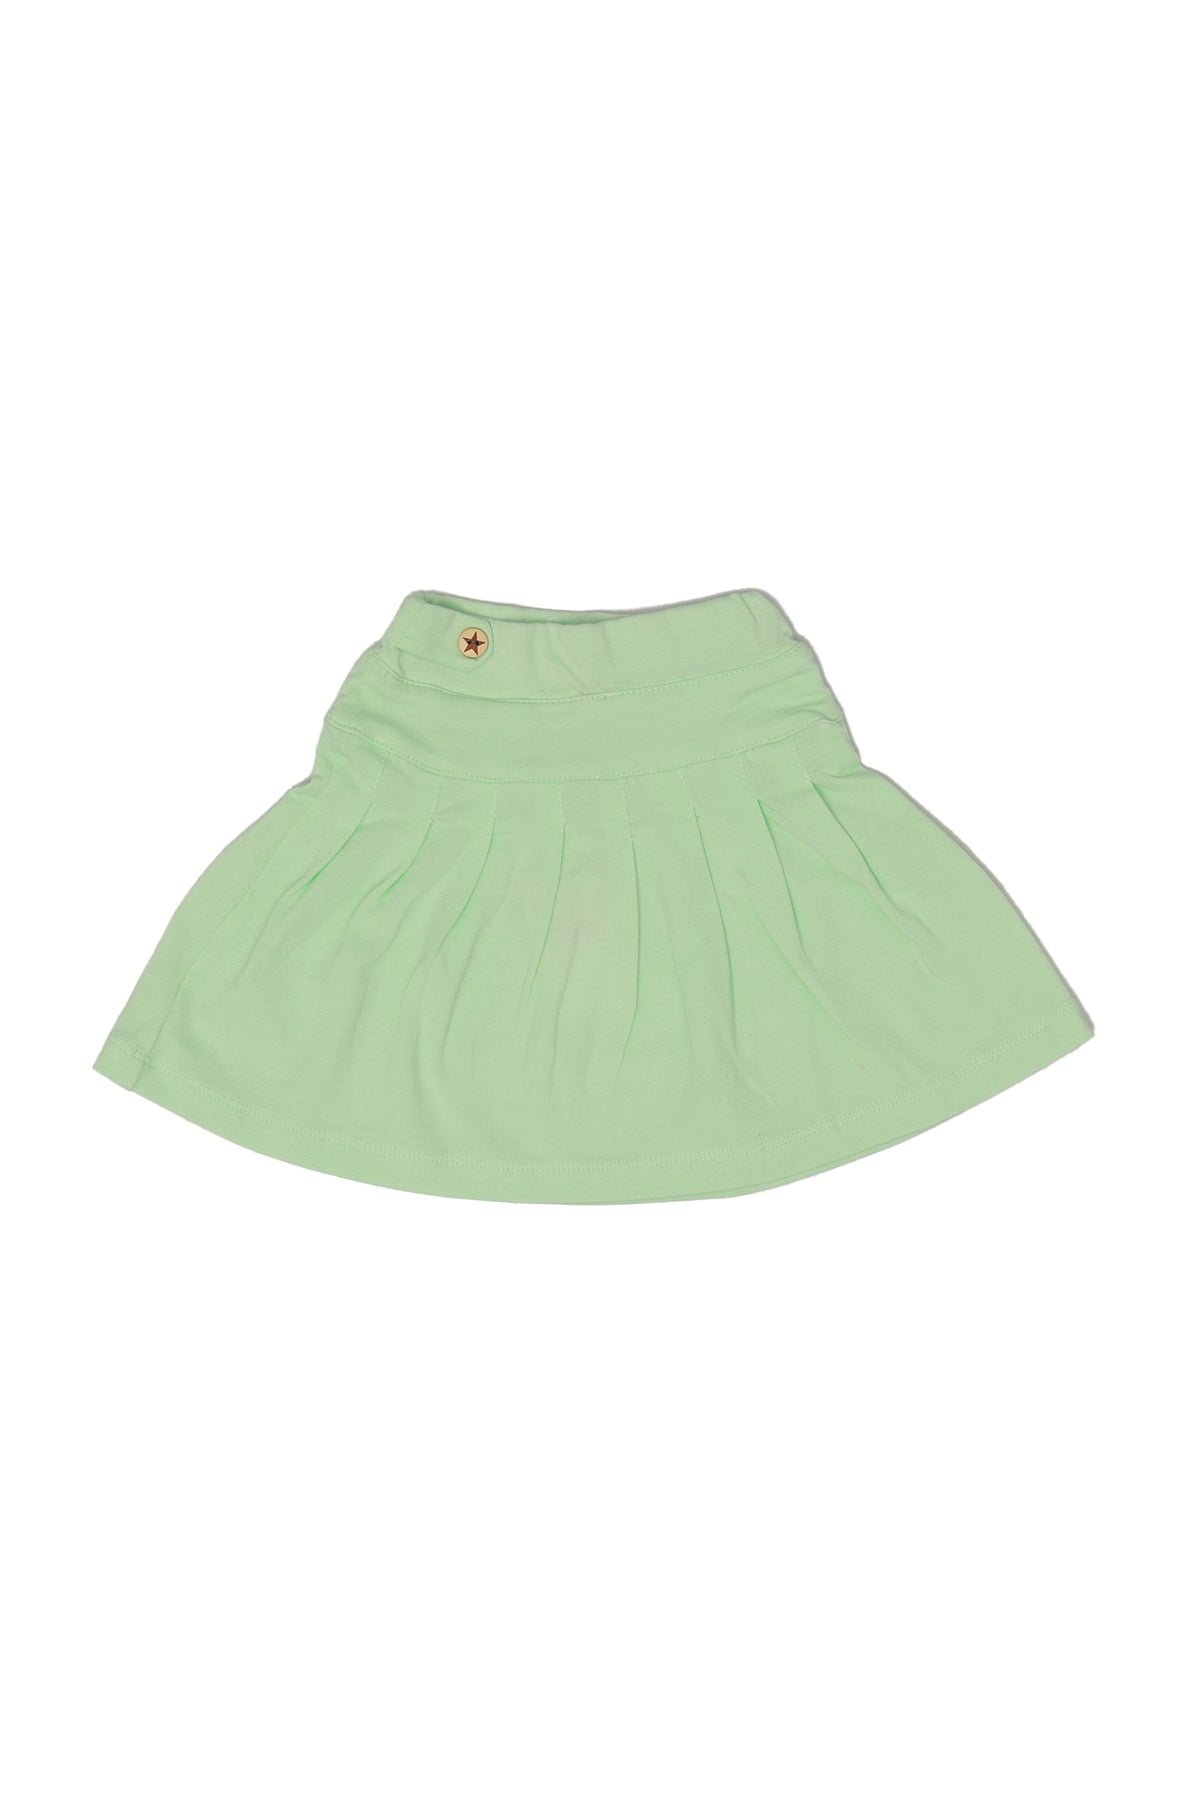 Ozone Baby Girls Casual Short Skirt